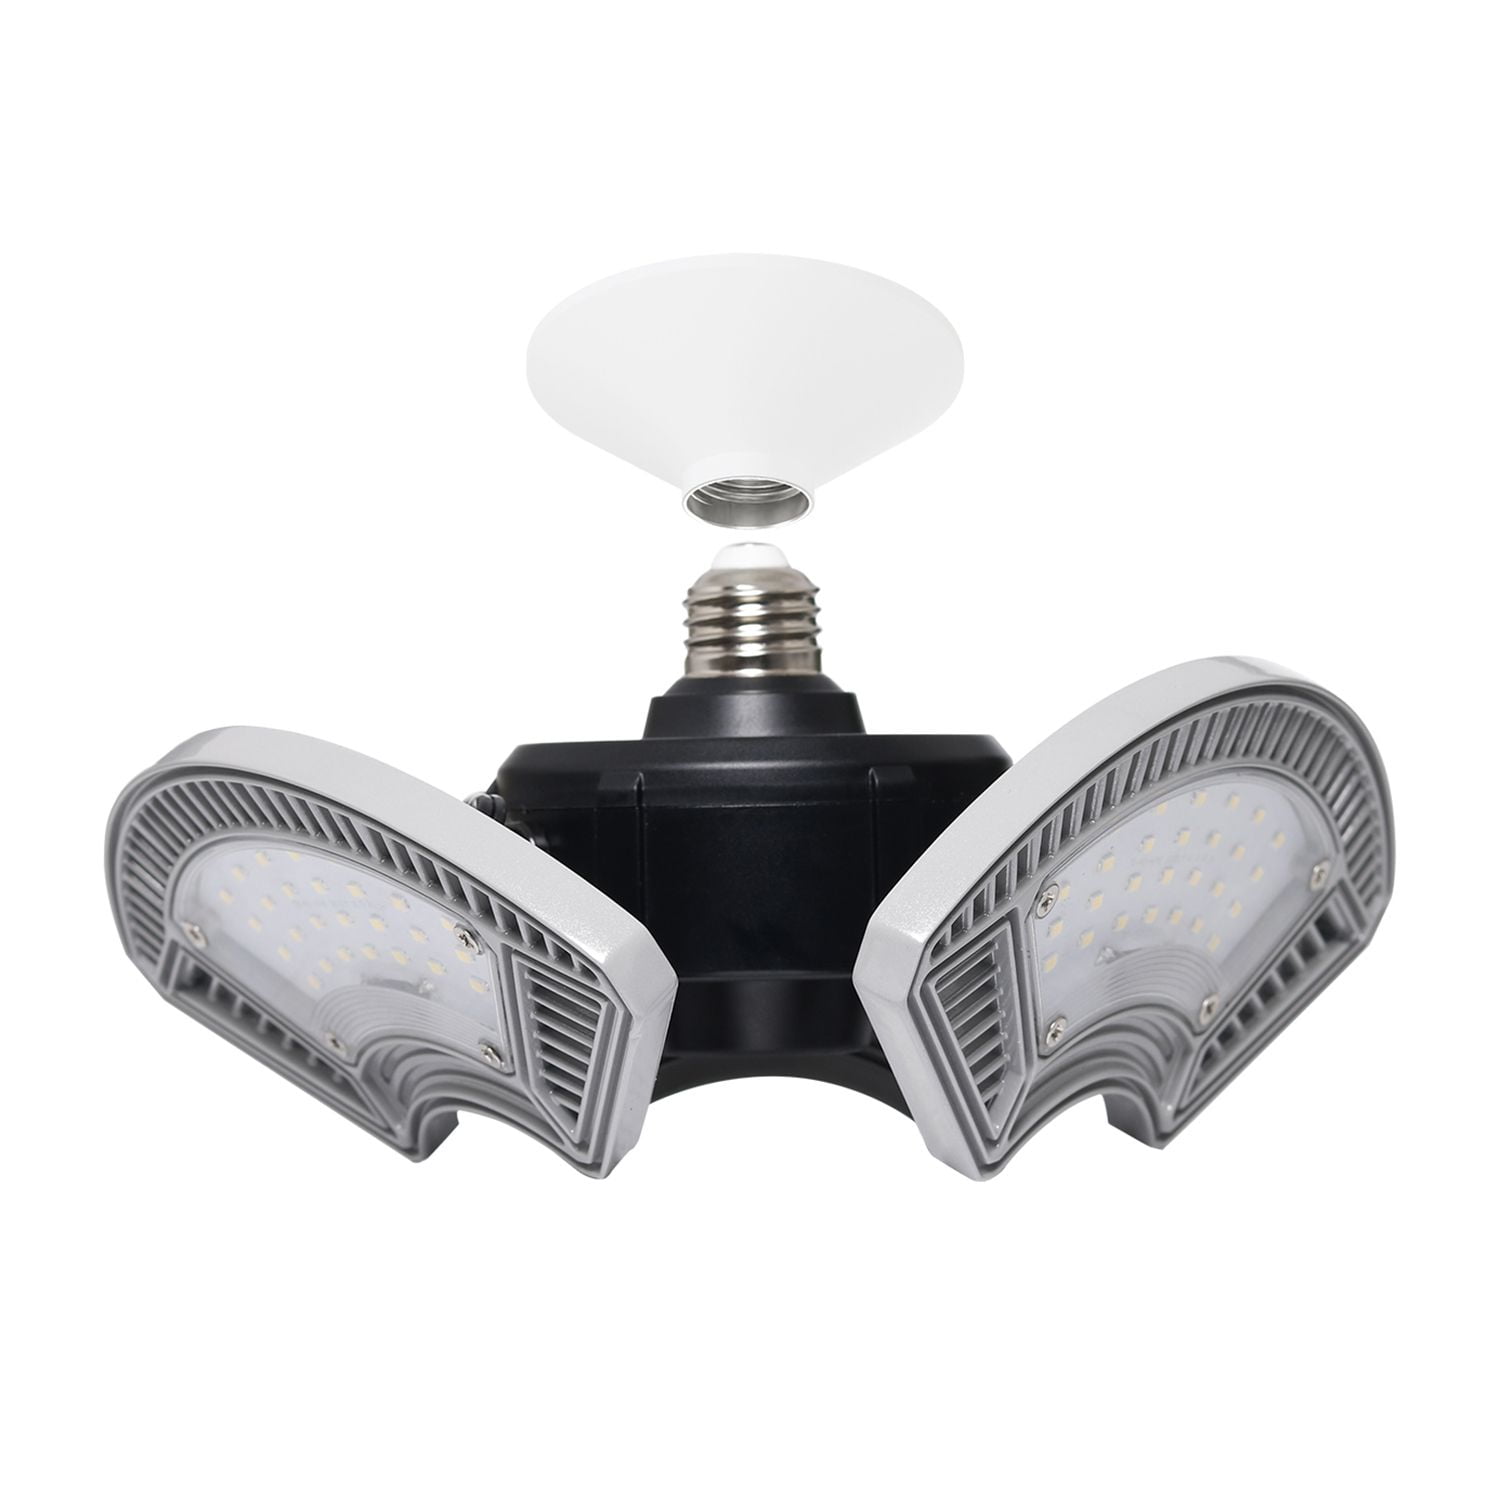 E27 LED Garage Light 6000LM High Bay Deformable Adjustable Home Workshop Lamp 